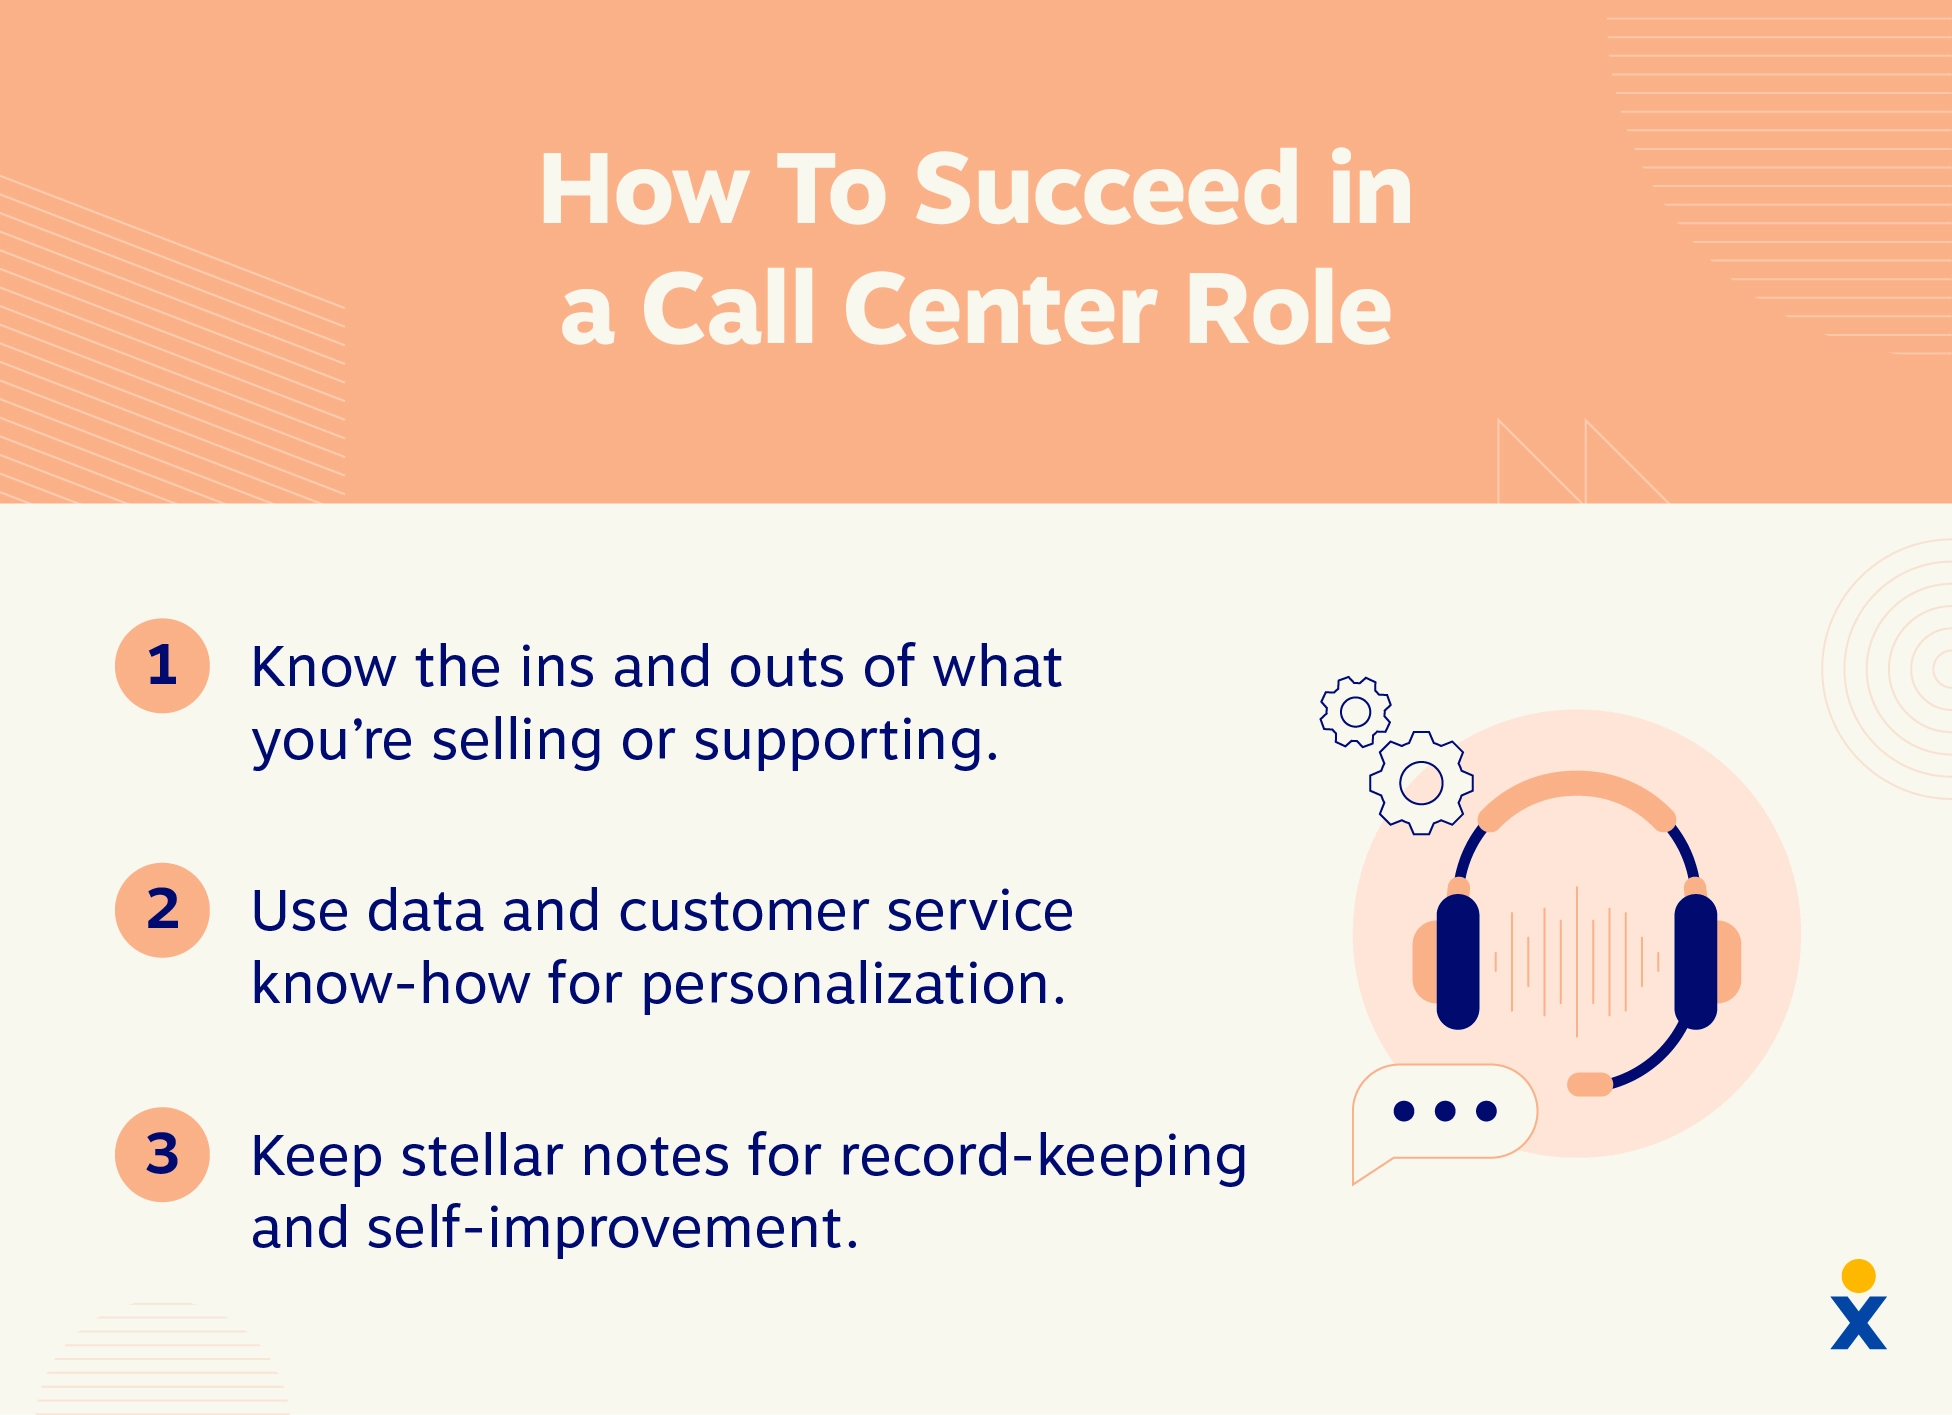 Tres consejos para tener éxito en un puesto de call center.